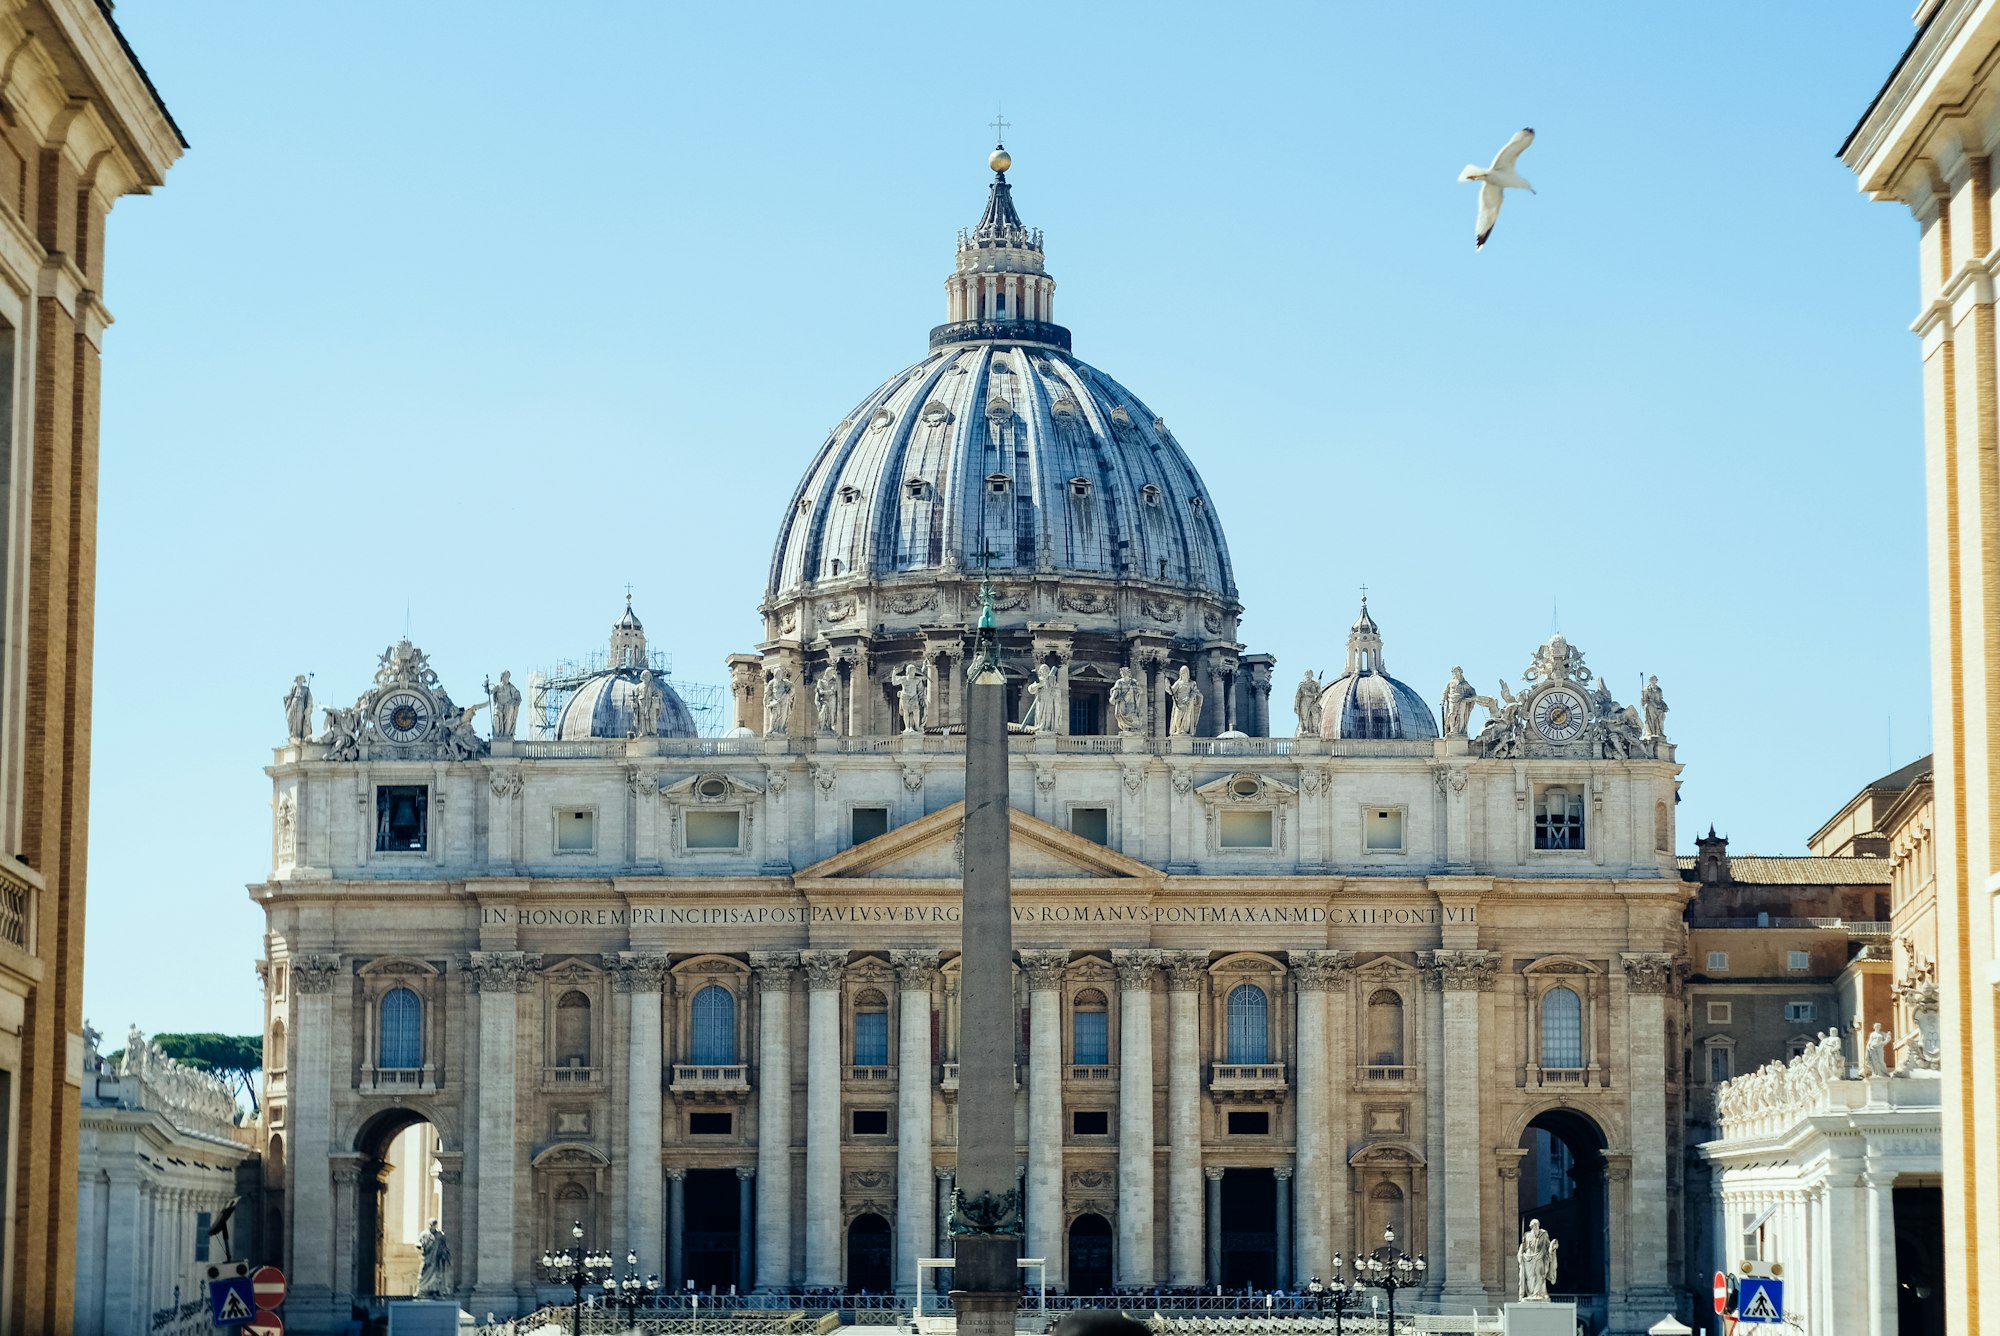 St Peter Basilica
Vaticano, Vatican City